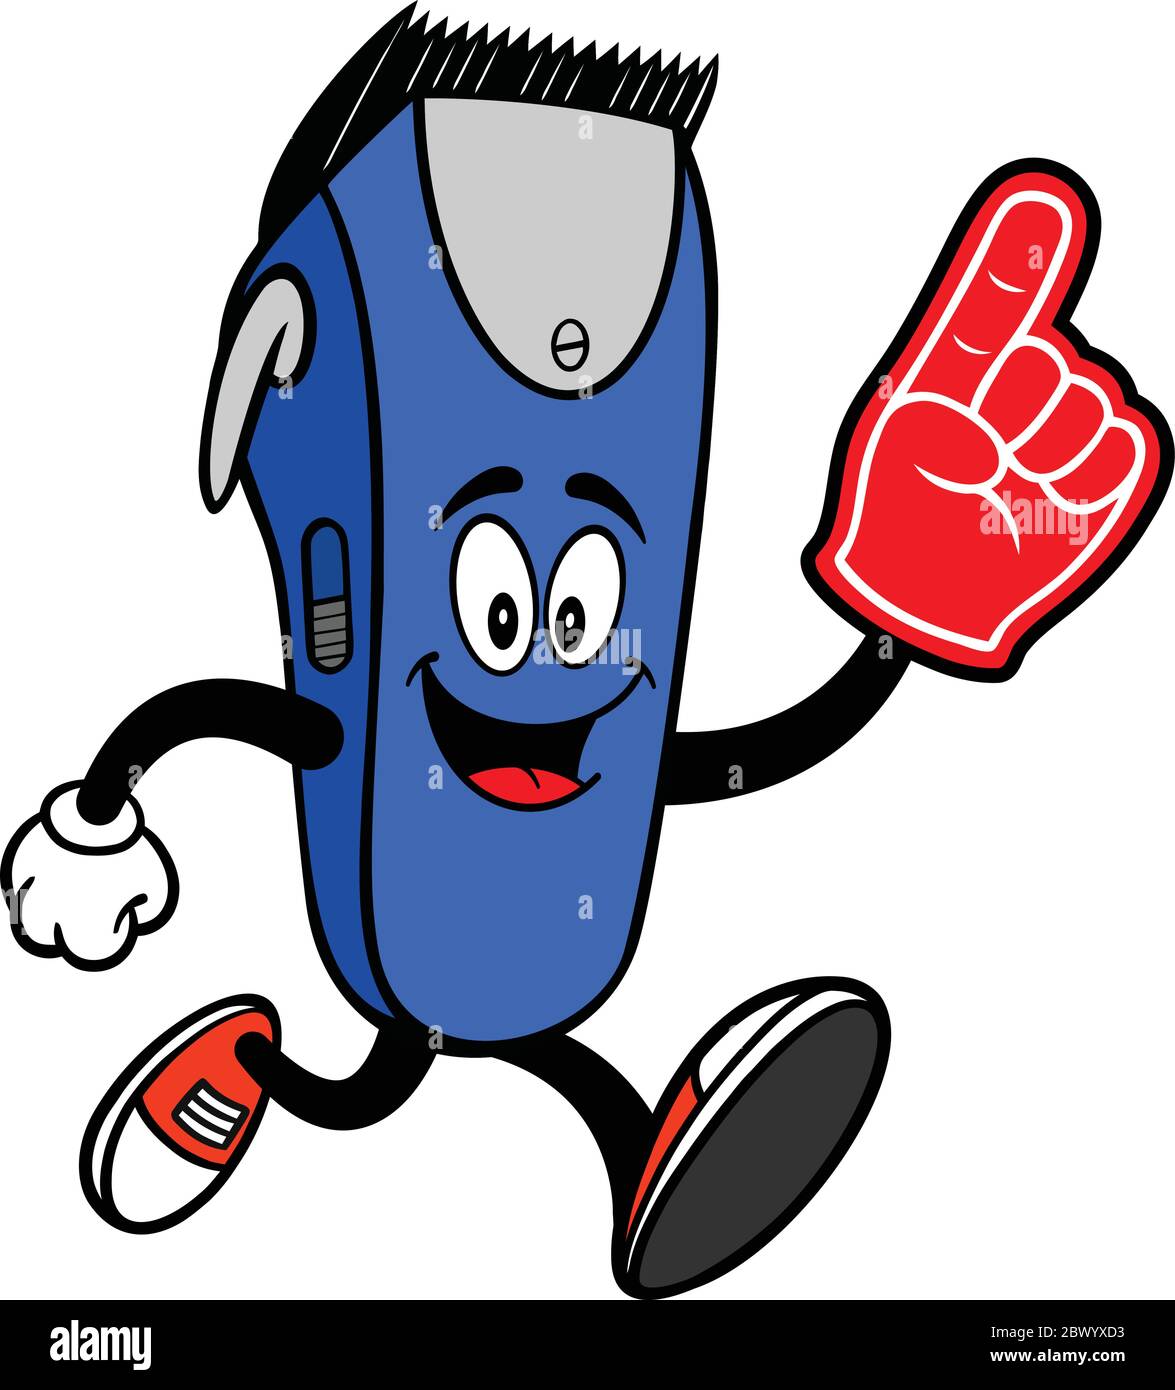 Electrical Hair Clipper Mascot Running with a finger in schiuma- UN Cartoon Illustrazione di una Mascotte elettrica Hair Clipper Running with a finger in schiuma. Illustrazione Vettoriale